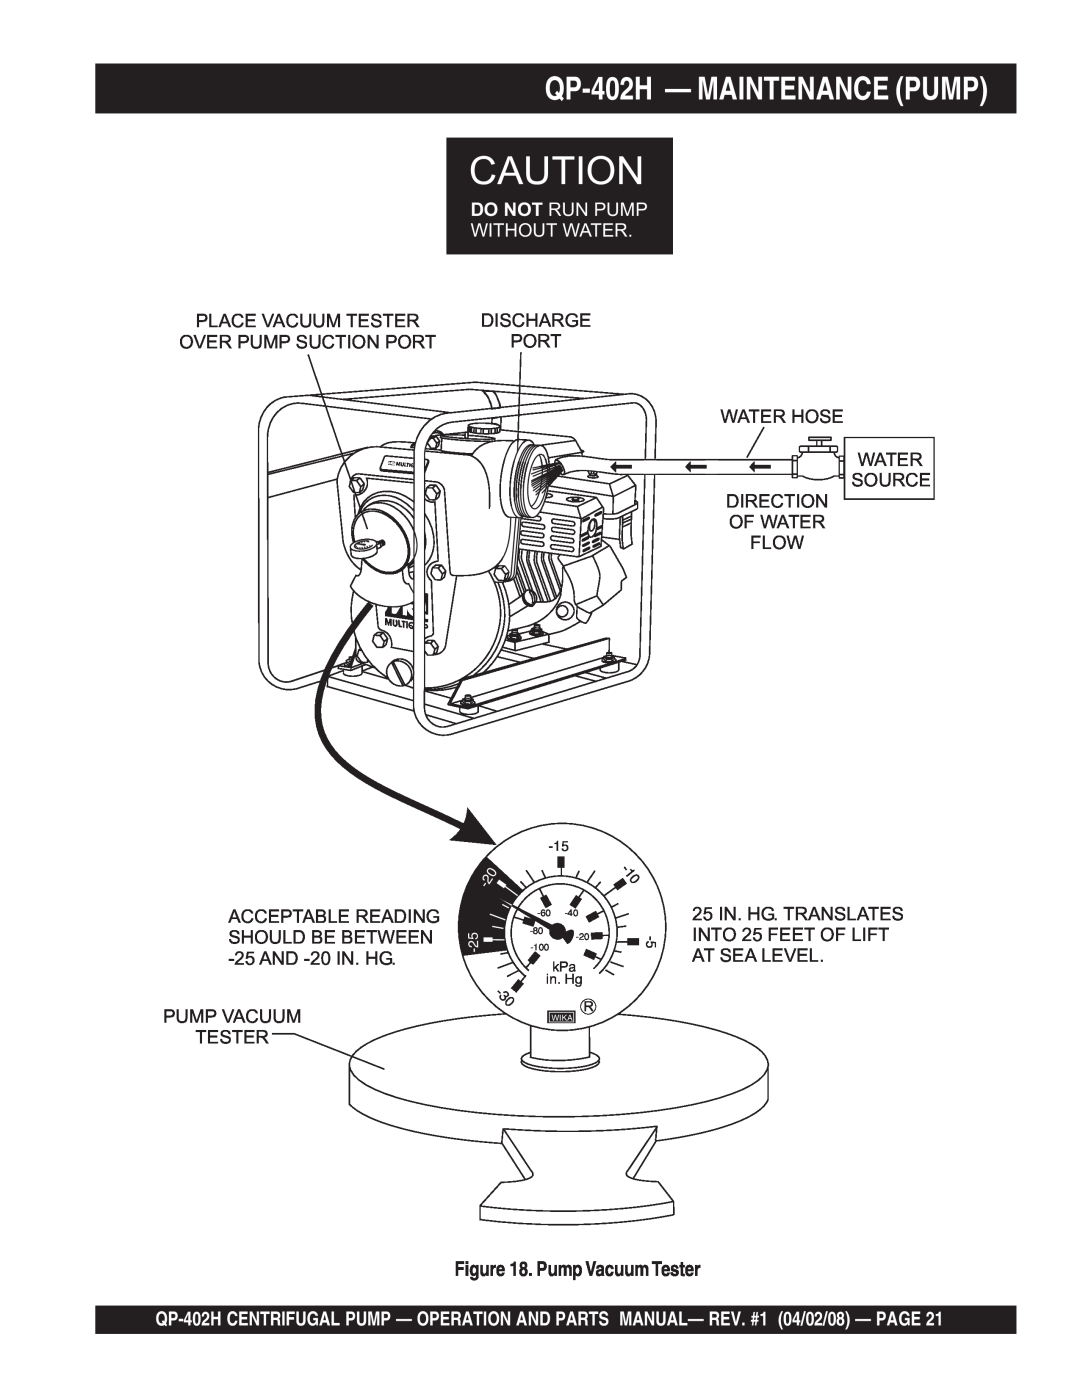 Multiquip qp-402h manual QP-402H- MAINTENANCE PUMP, Pump Vacuum Tester, Do Not Run Pump Without Water 